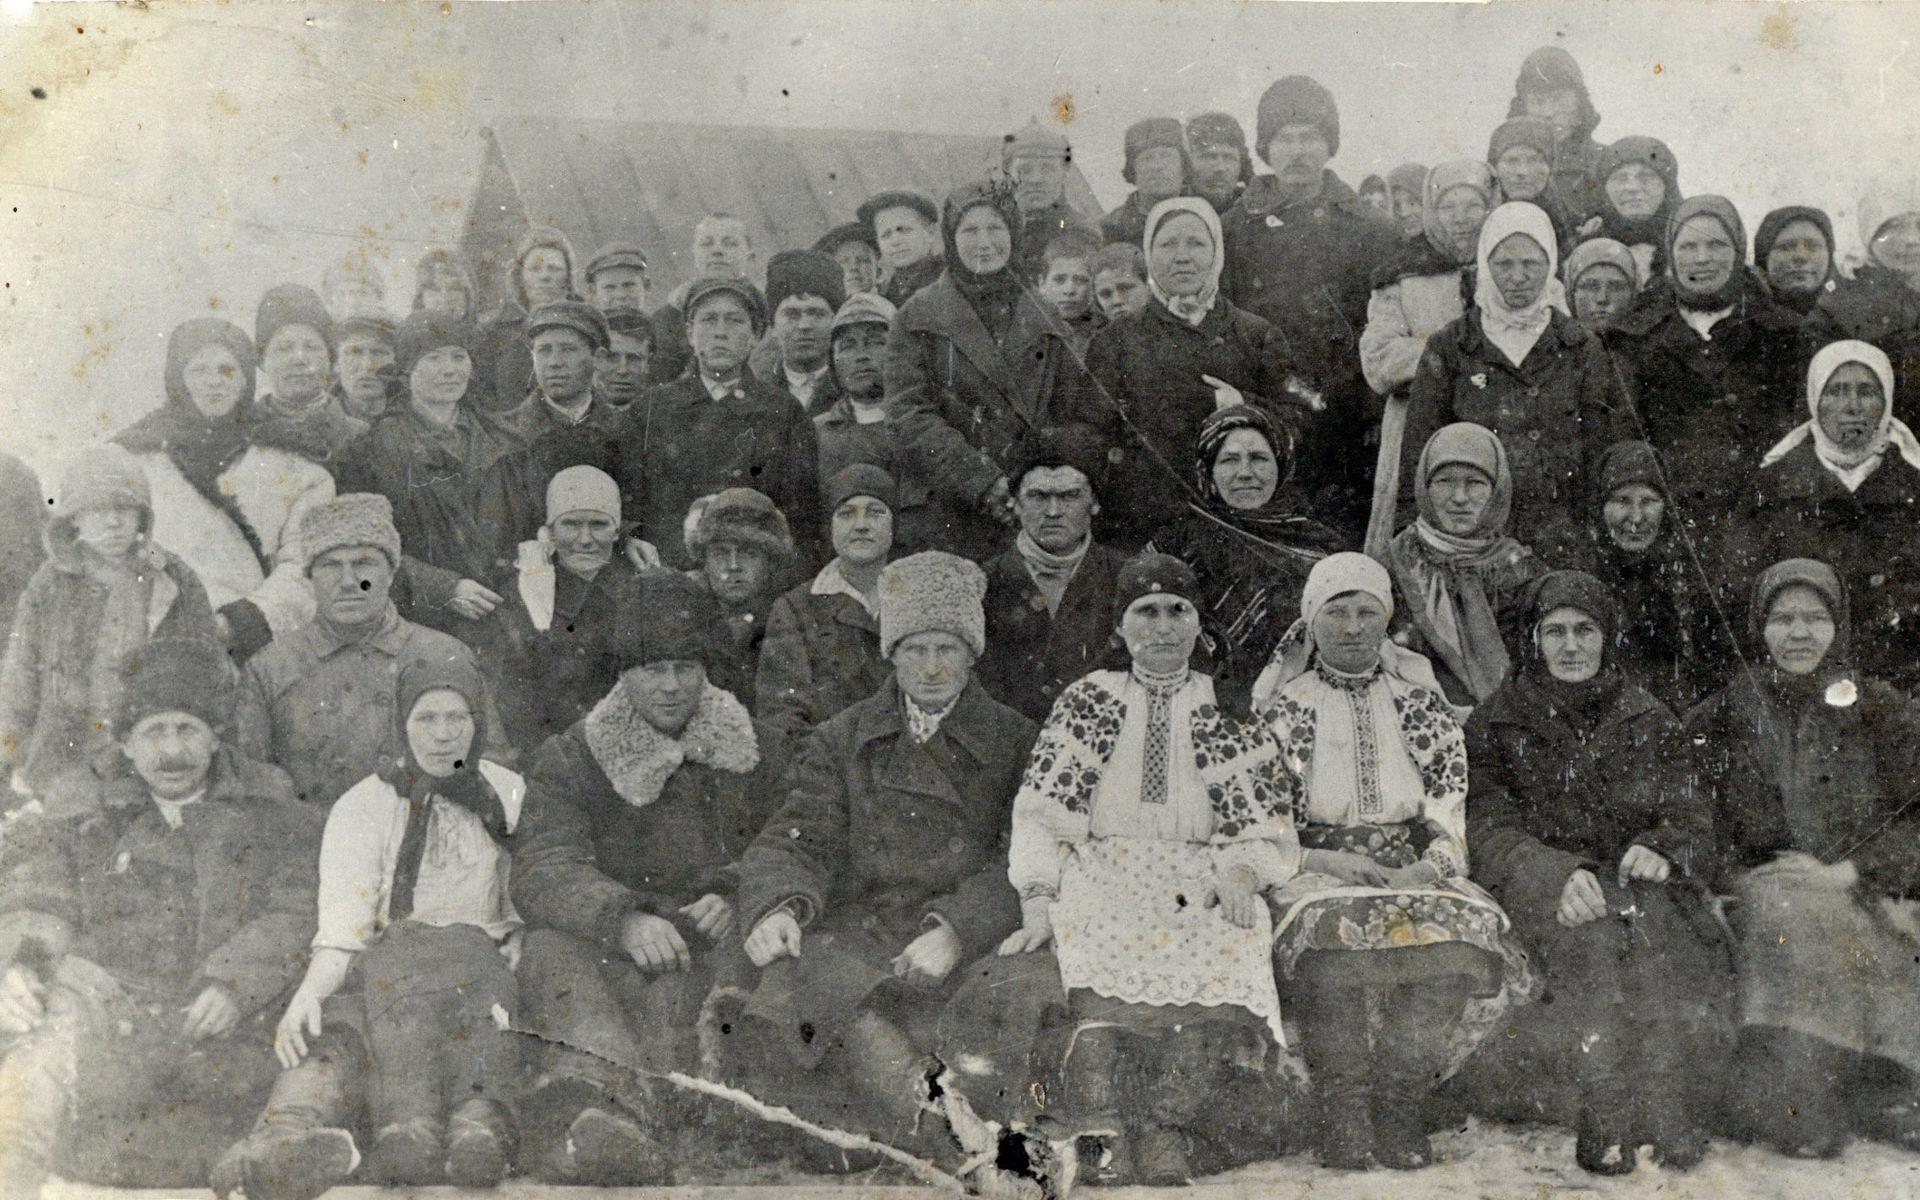 De överlevande från byn Krasylivka samlas för ett gruppfoto efter att hungersnöden ebbat ut 1934.